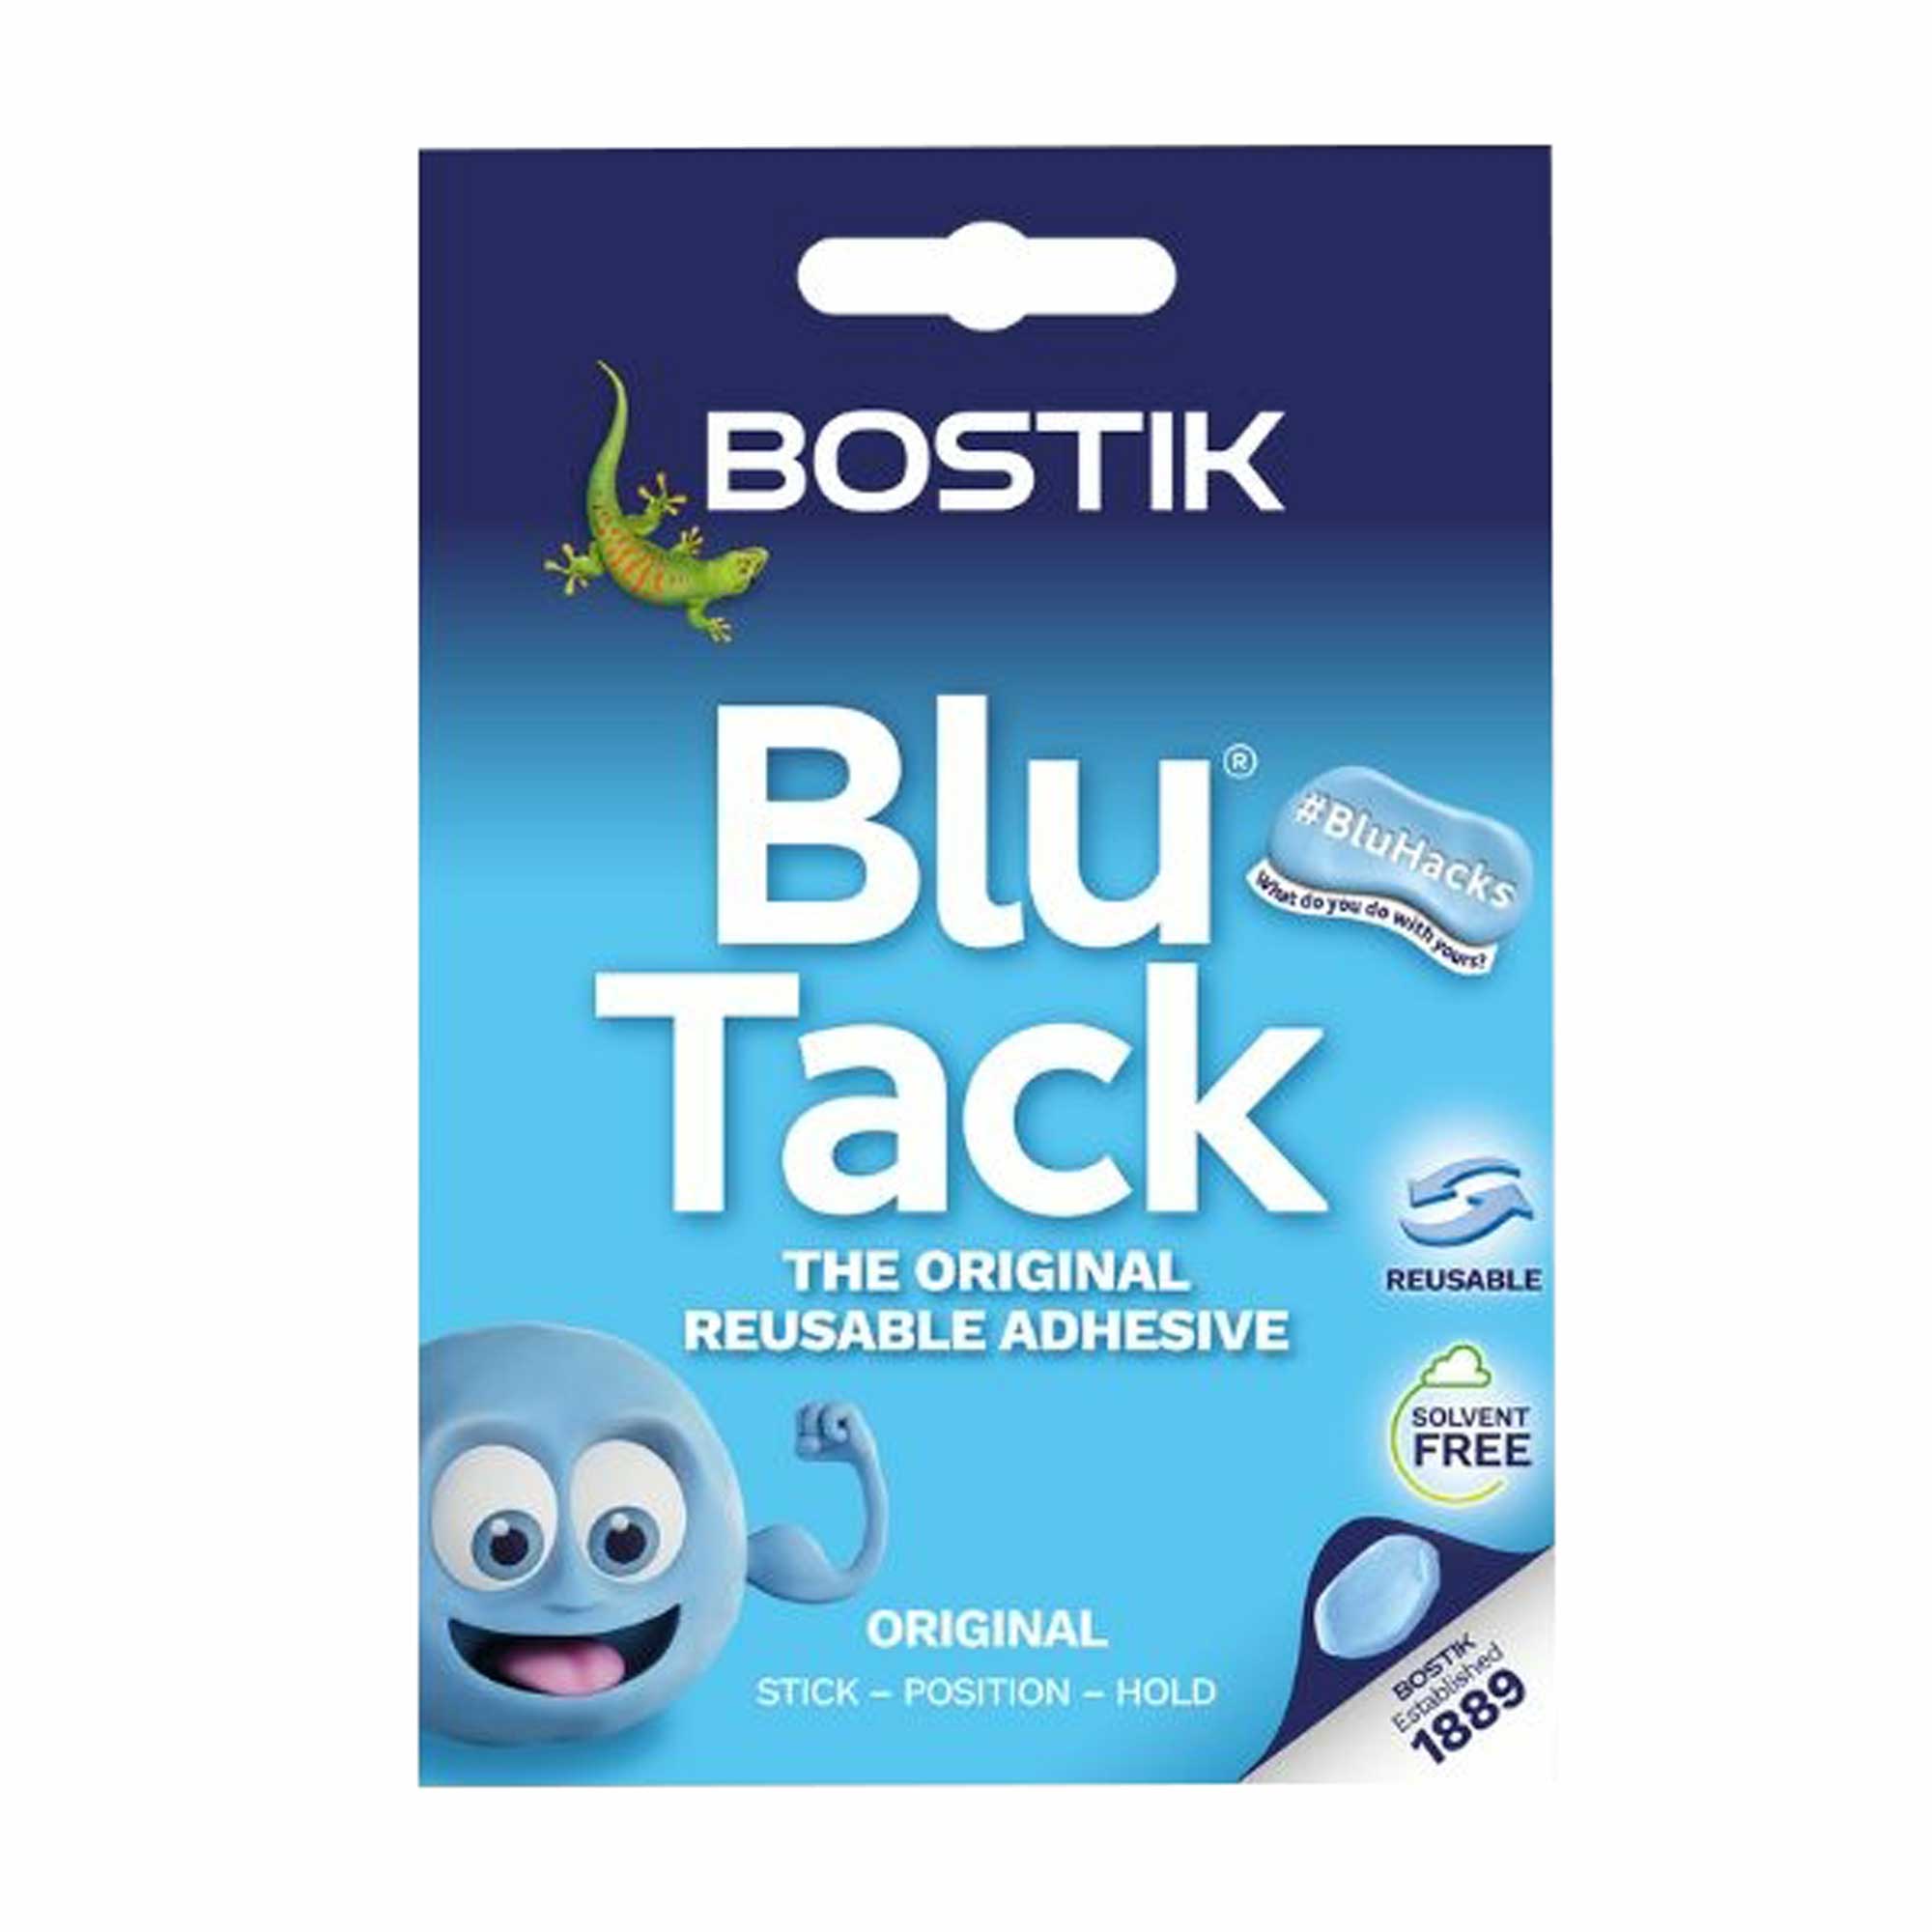 Bostik Blu Tack® - Original Reusable Adhesive Tack